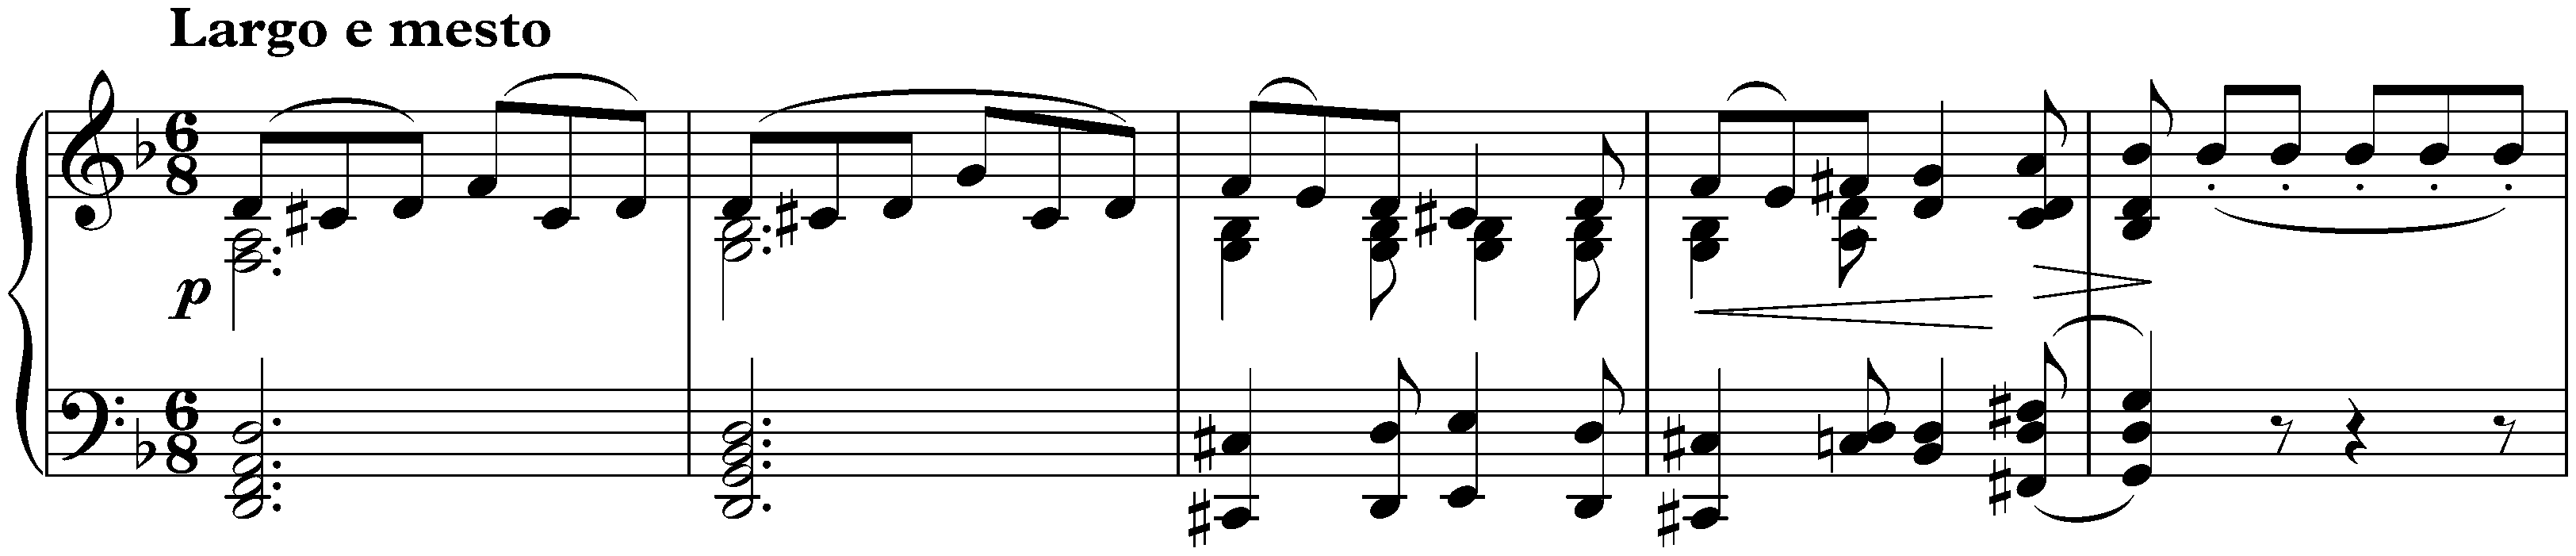 Sonata no. 7 in D major, op. 10 no. 3; 2. Largo e mesto